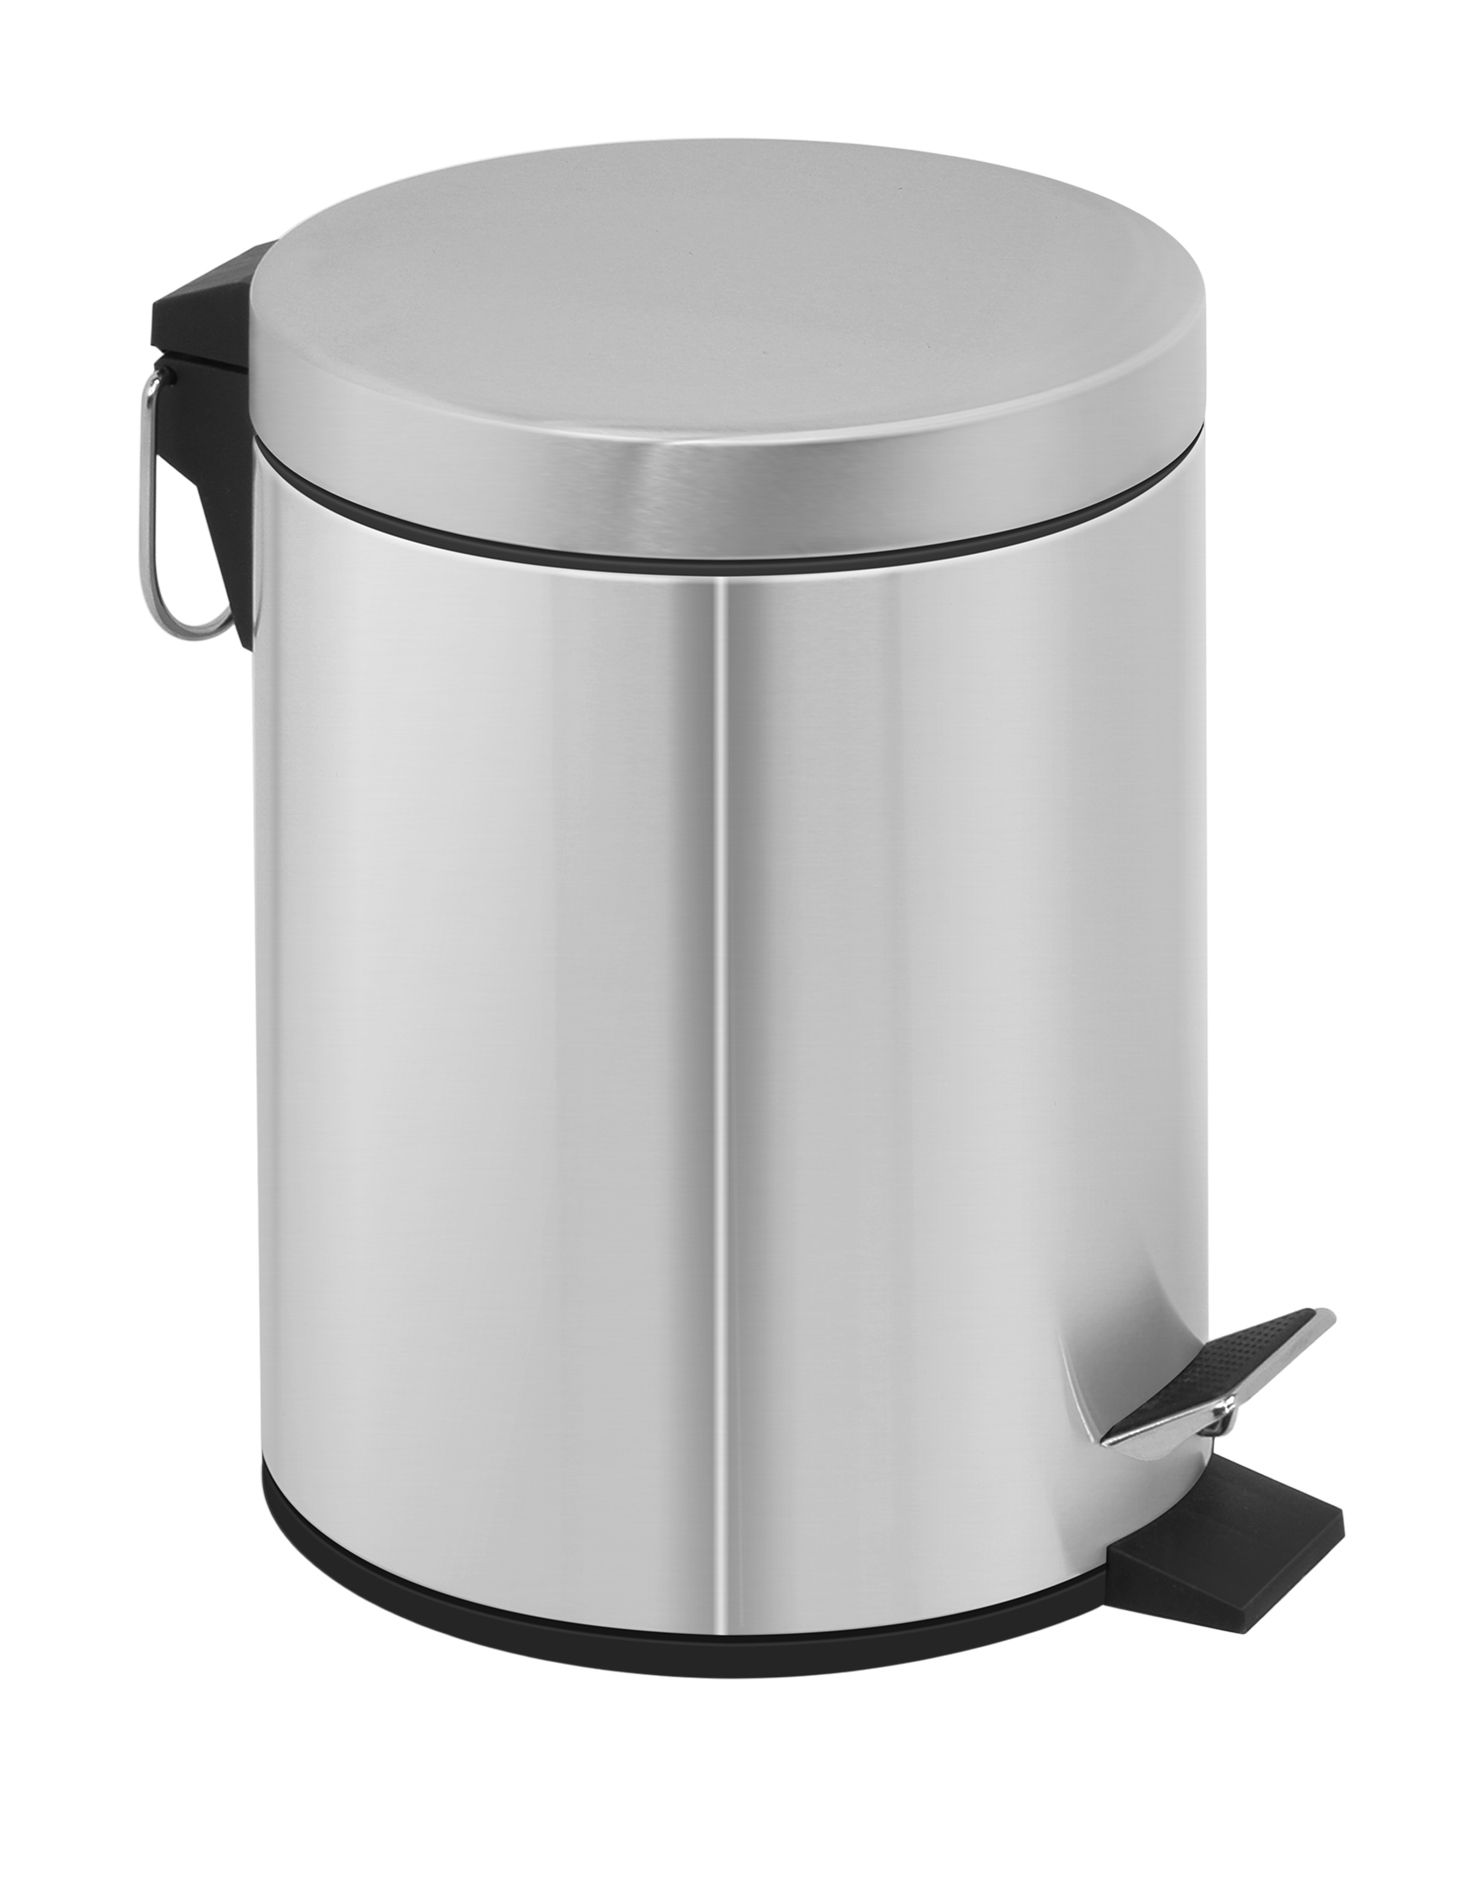 Jost stainless steel 12 litre Pedal waste bin